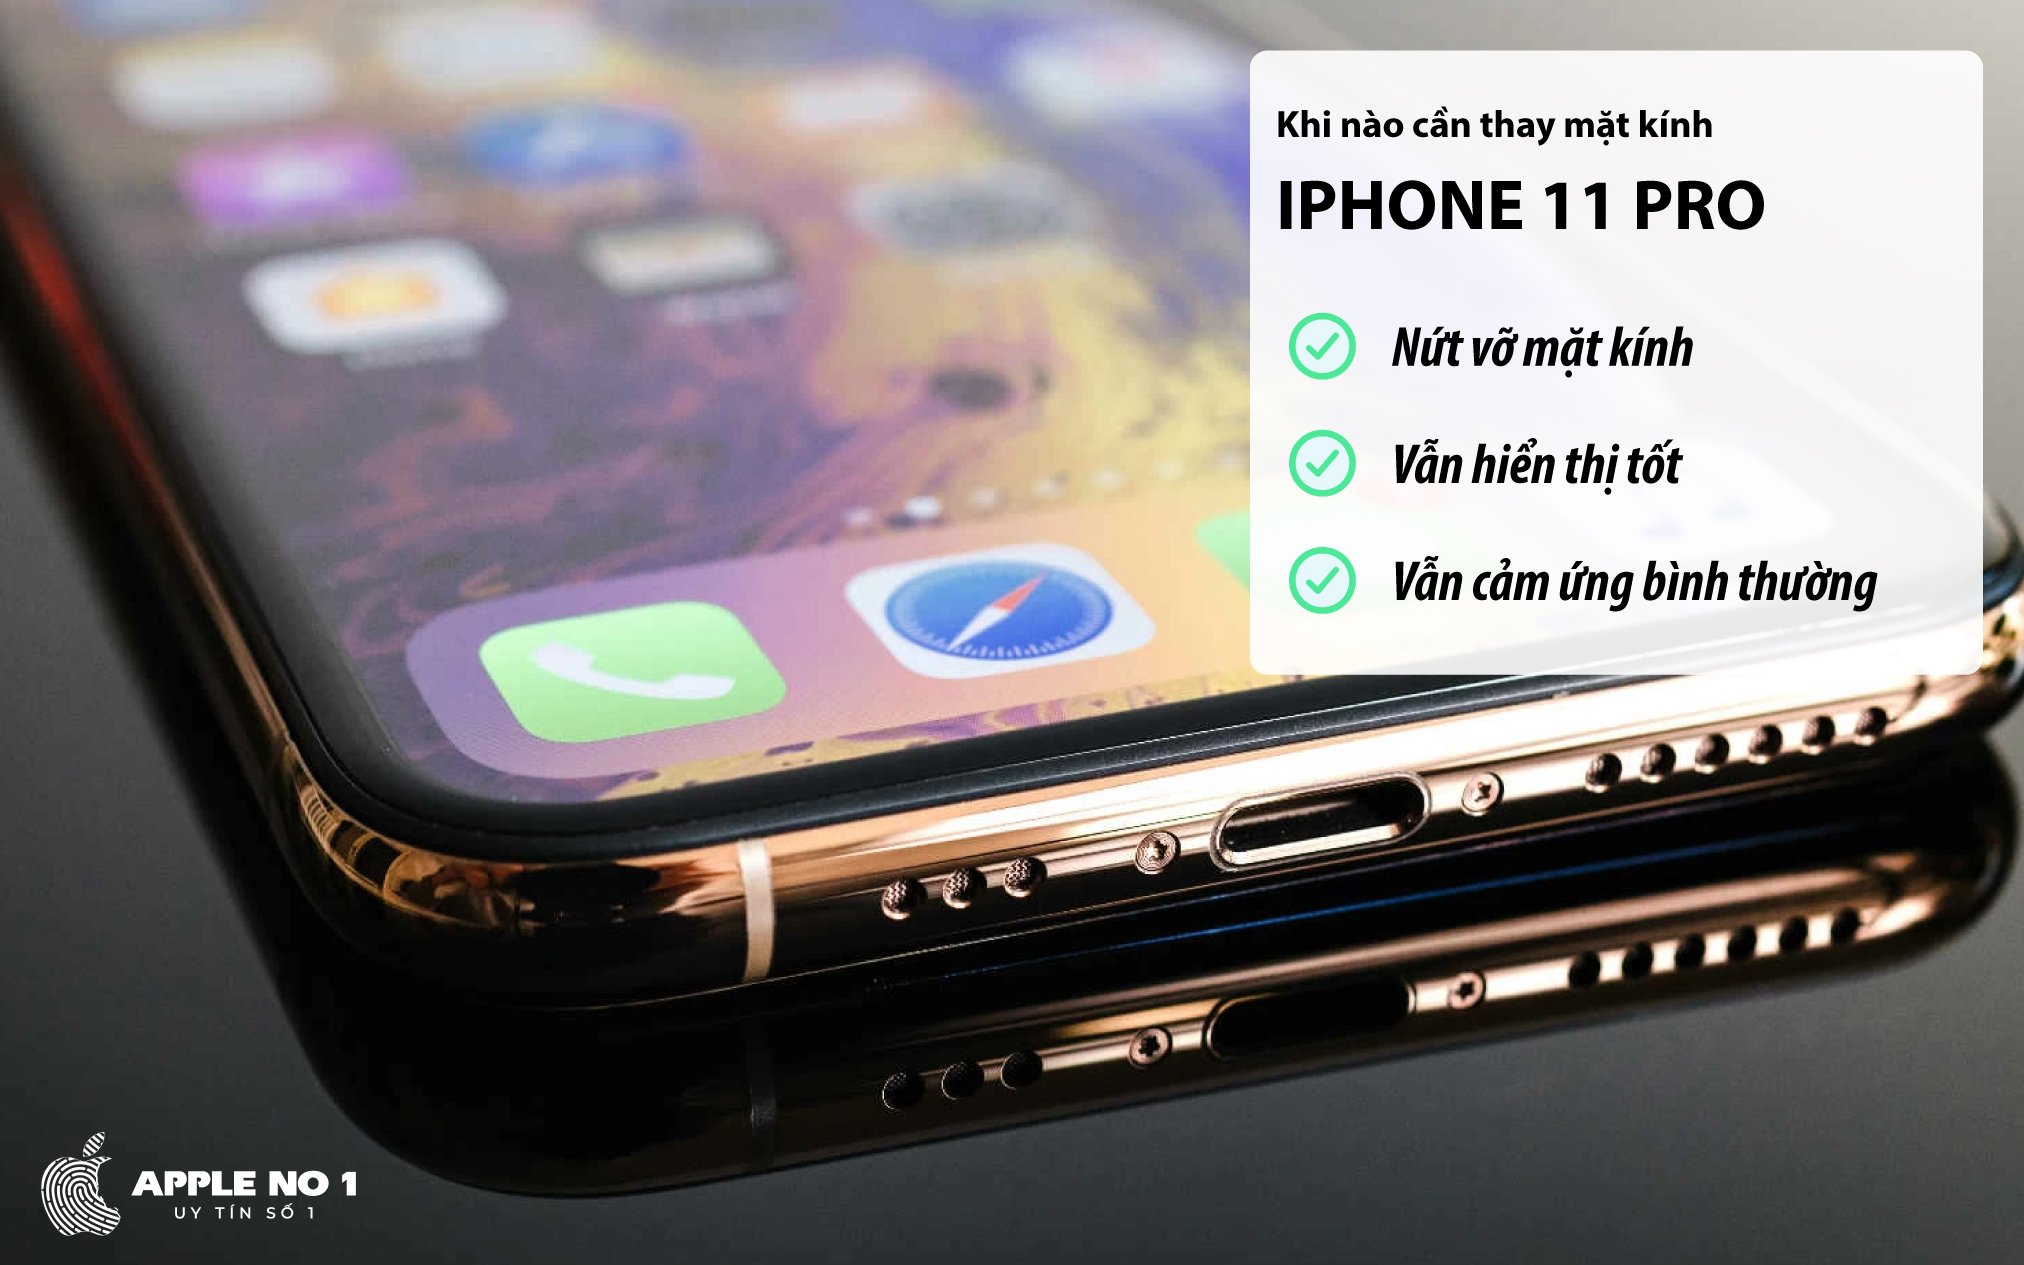 Nhung dau hieu cho thay nguoi dung phai thay mat kinh iPhone 11 Pro?